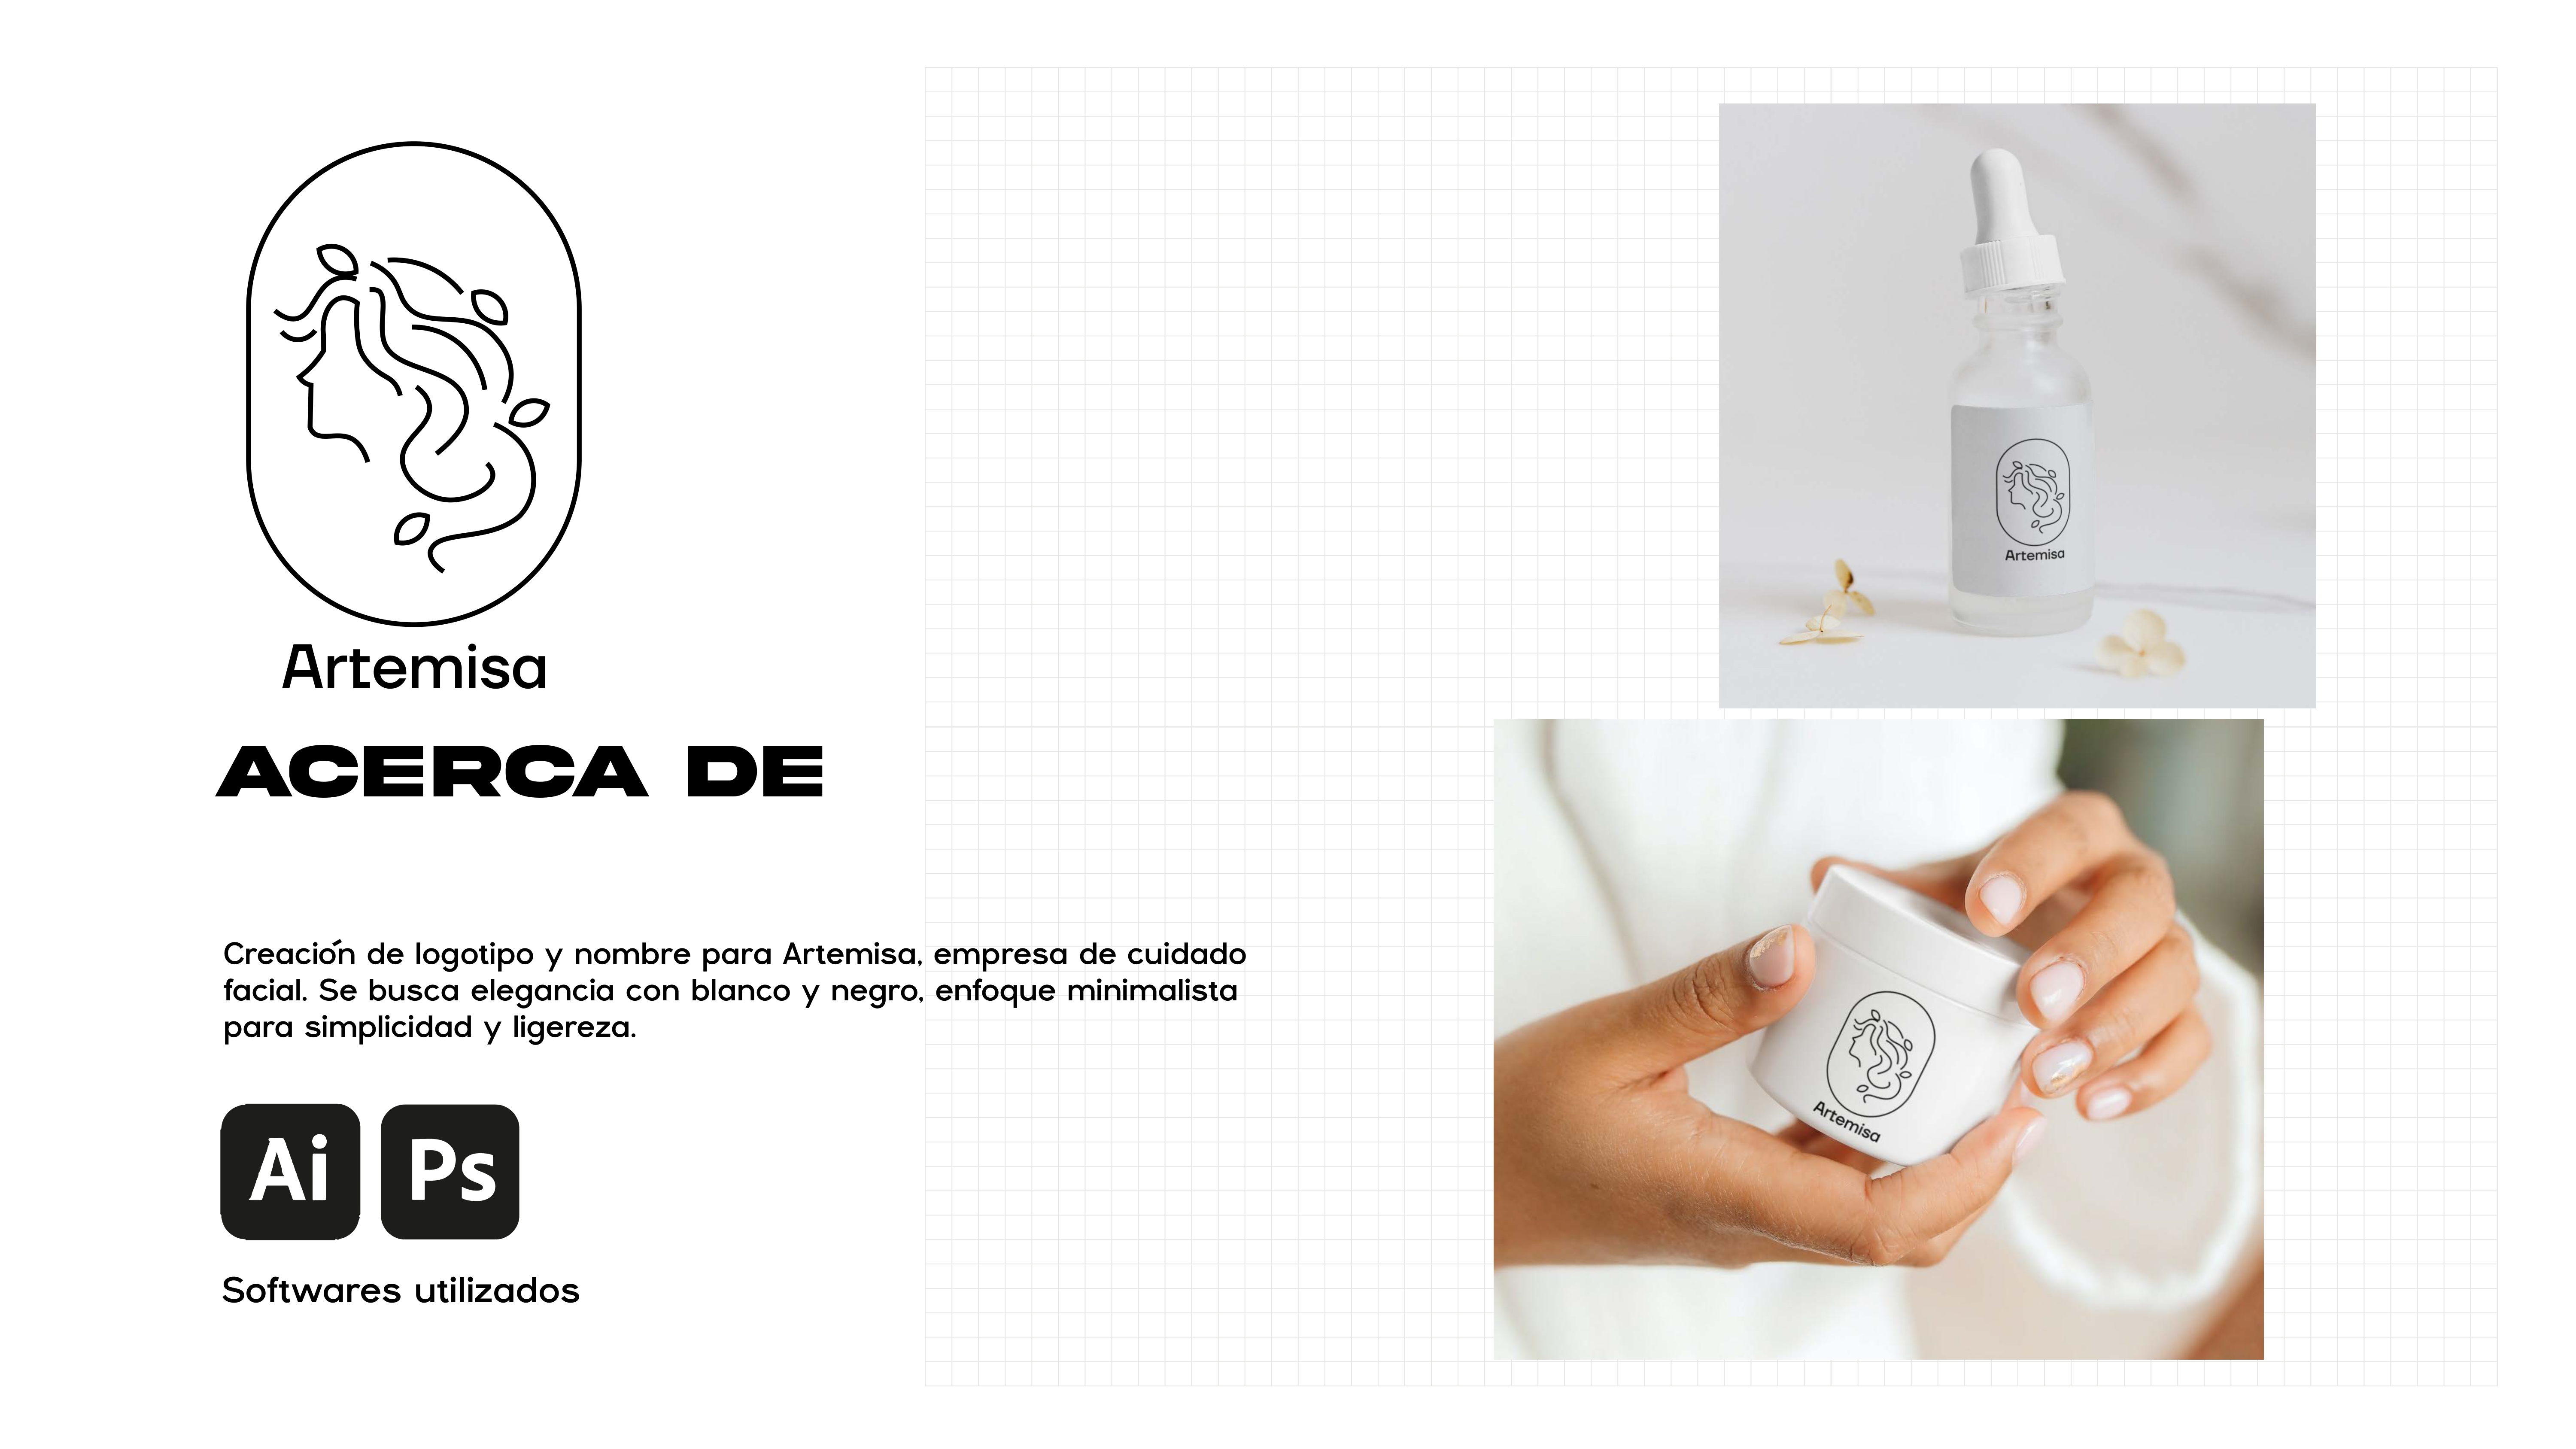 Artemisa
ACERCA DE

Creacion de logotipo y nombre para Artemisa, empresa de cuidado

facial. Se busca elegancia con blanco y negro, enfoque minimalista
para simplicidad y ligereza.

UE

Softwares utilizados

 

Artemisa